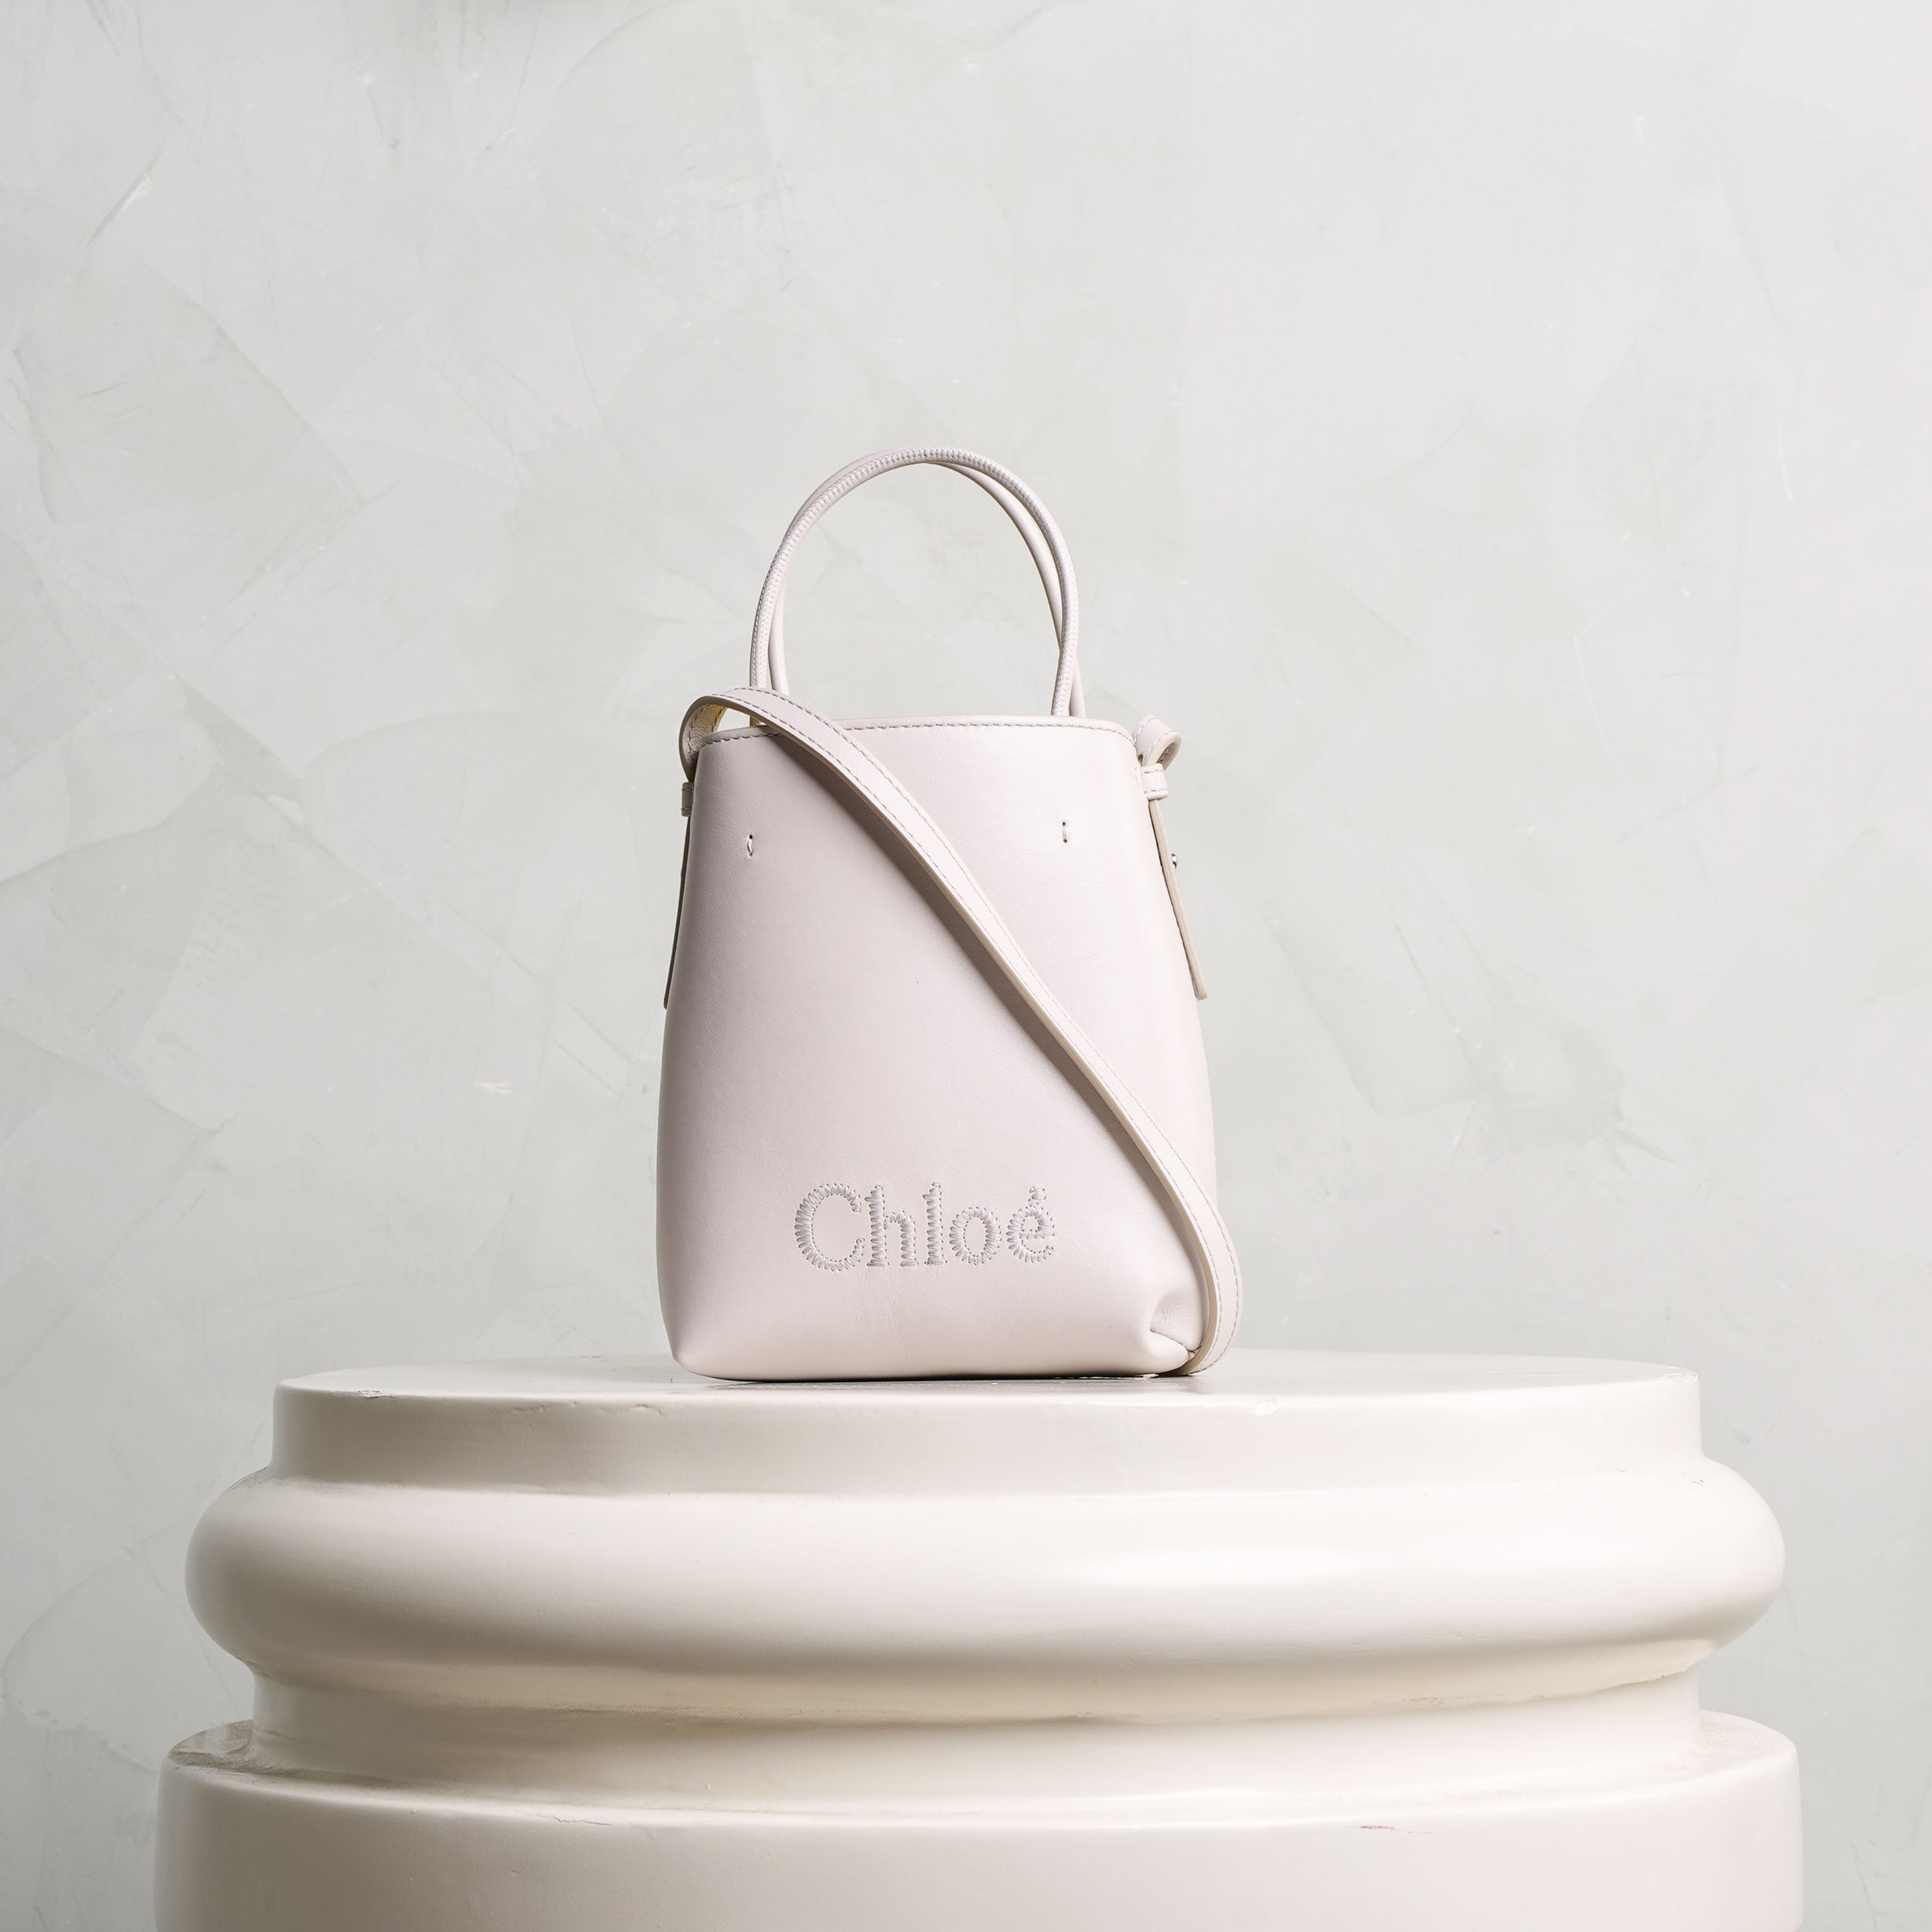 Chloe, Bags